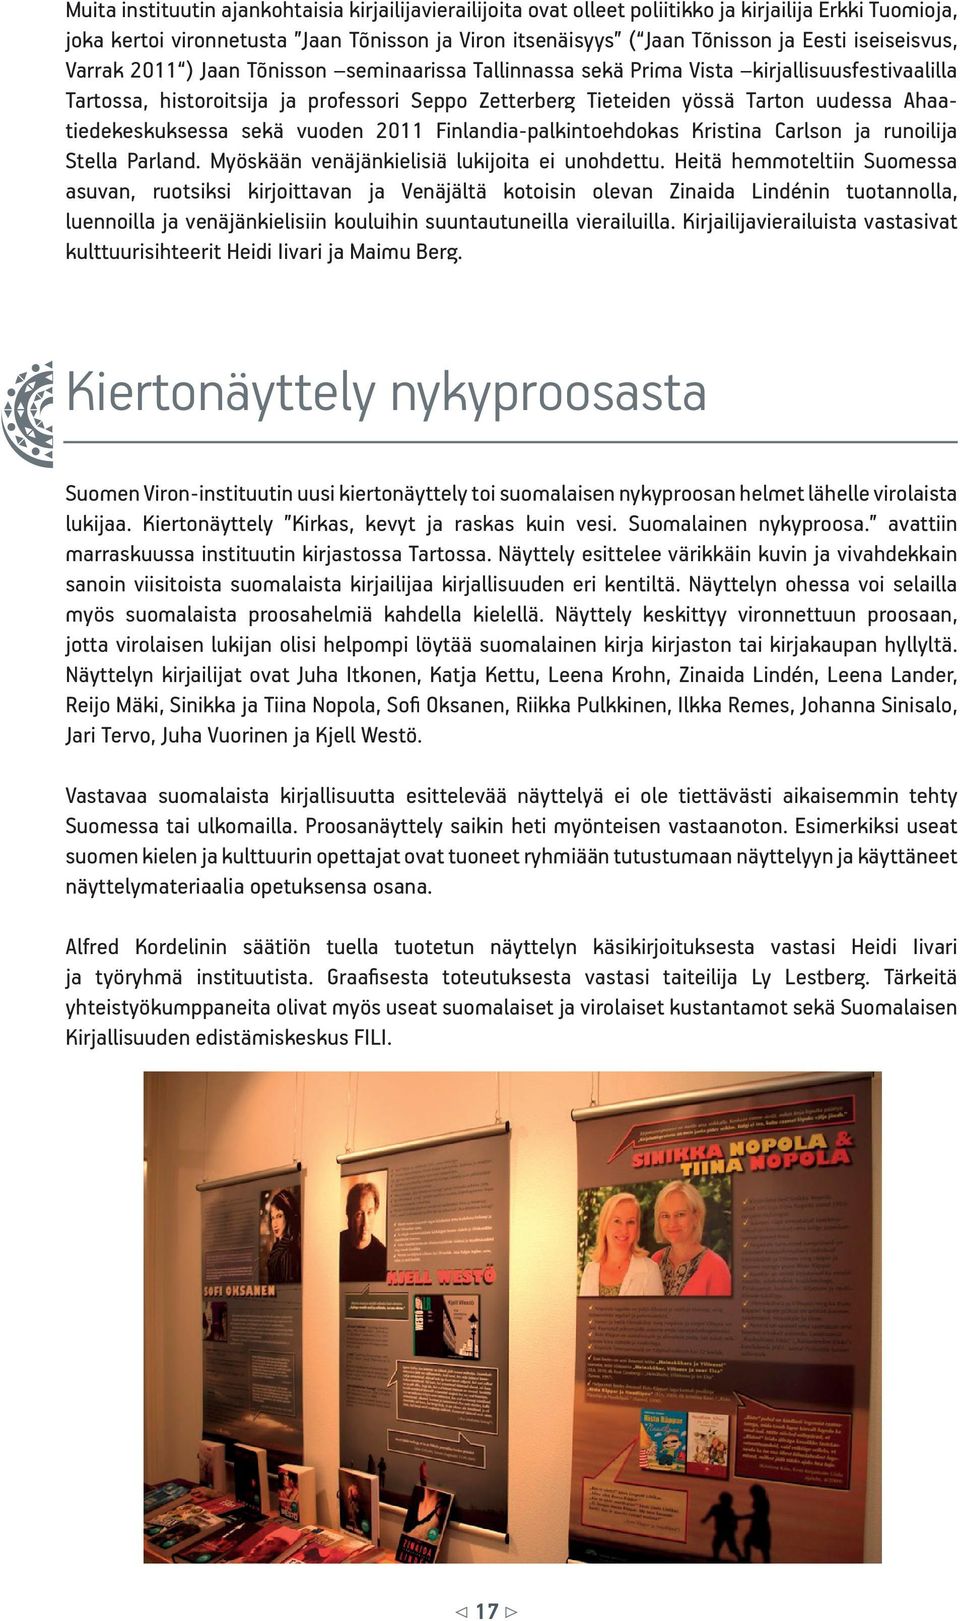 Ahaatiedekeskuksessa sekä vuoden 2011 Finlandia-palkintoehdokas Kristina Carlson ja runoilija Stella Parland. Myöskään venäjänkielisiä lukijoita ei unohdettu.